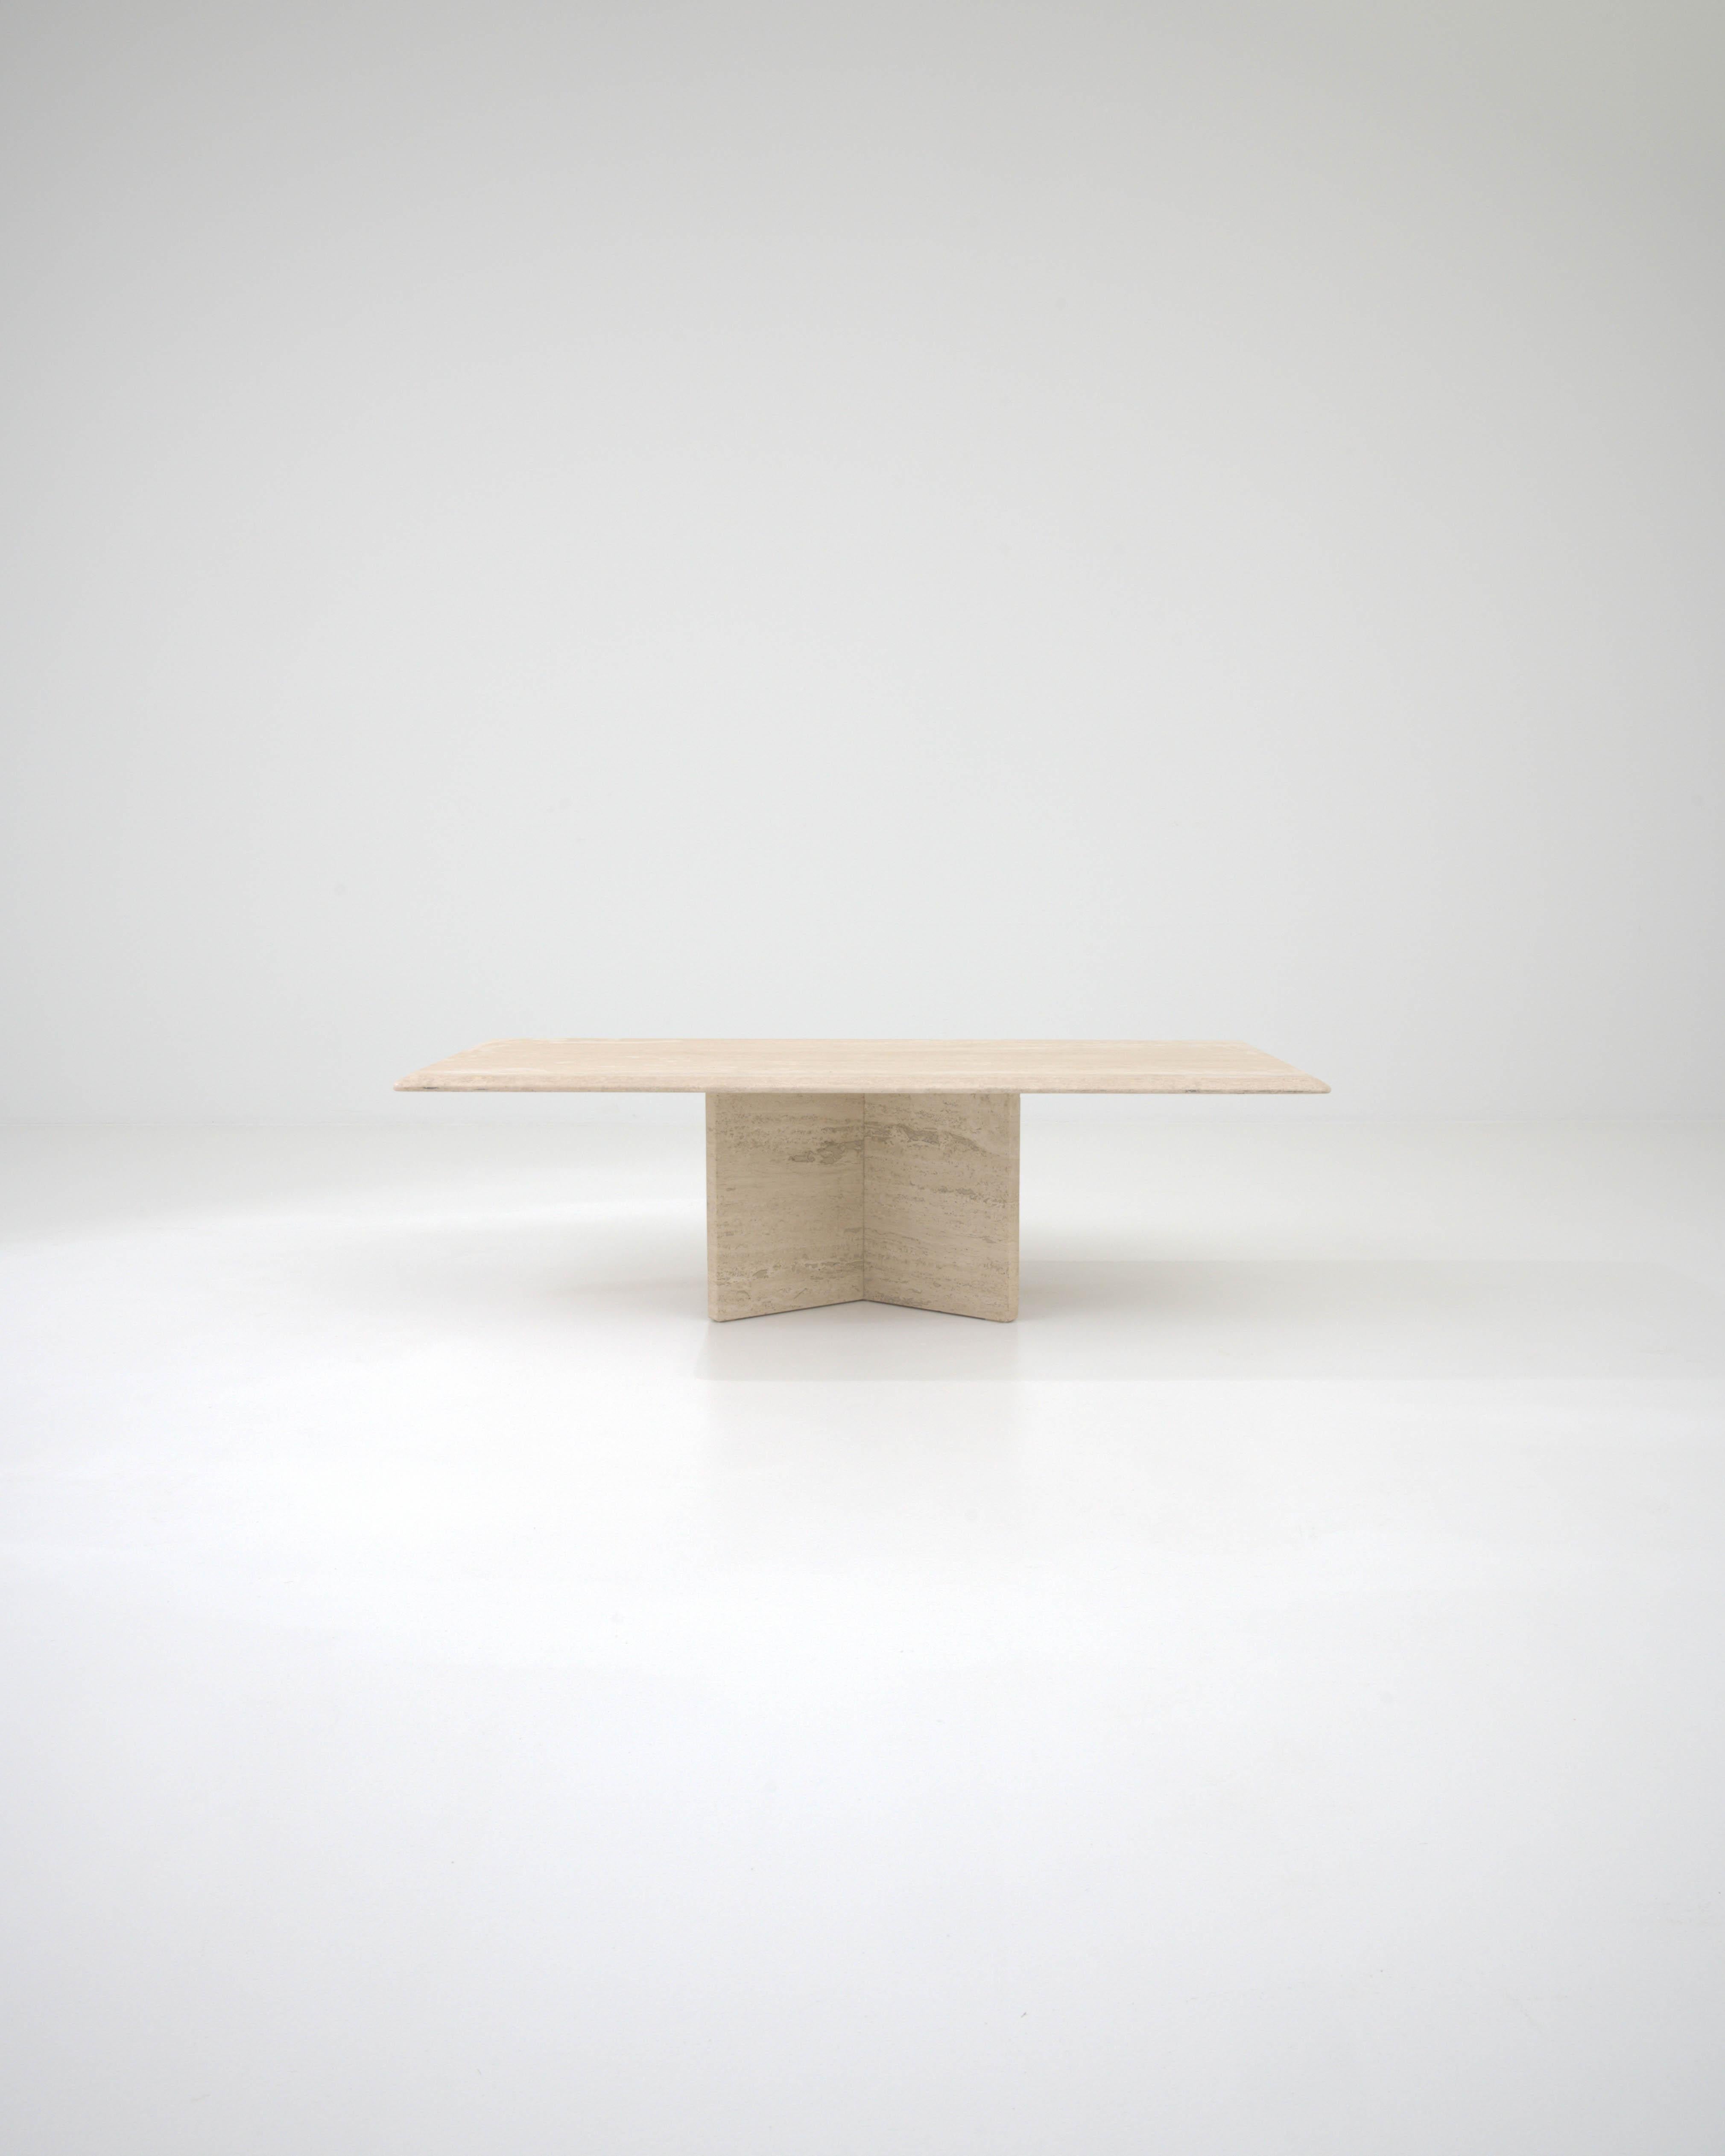 Dieser skulpturale Tisch aus cremefarbenem Marmor, der im Italien des 20. Jahrhunderts hergestellt wurde, besteht aus einer quadratischen Platte, die elegant auf Steinblöcken ruht. Diese Blöcke werden kunstvoll wie ein offenes Buch zusammengesetzt